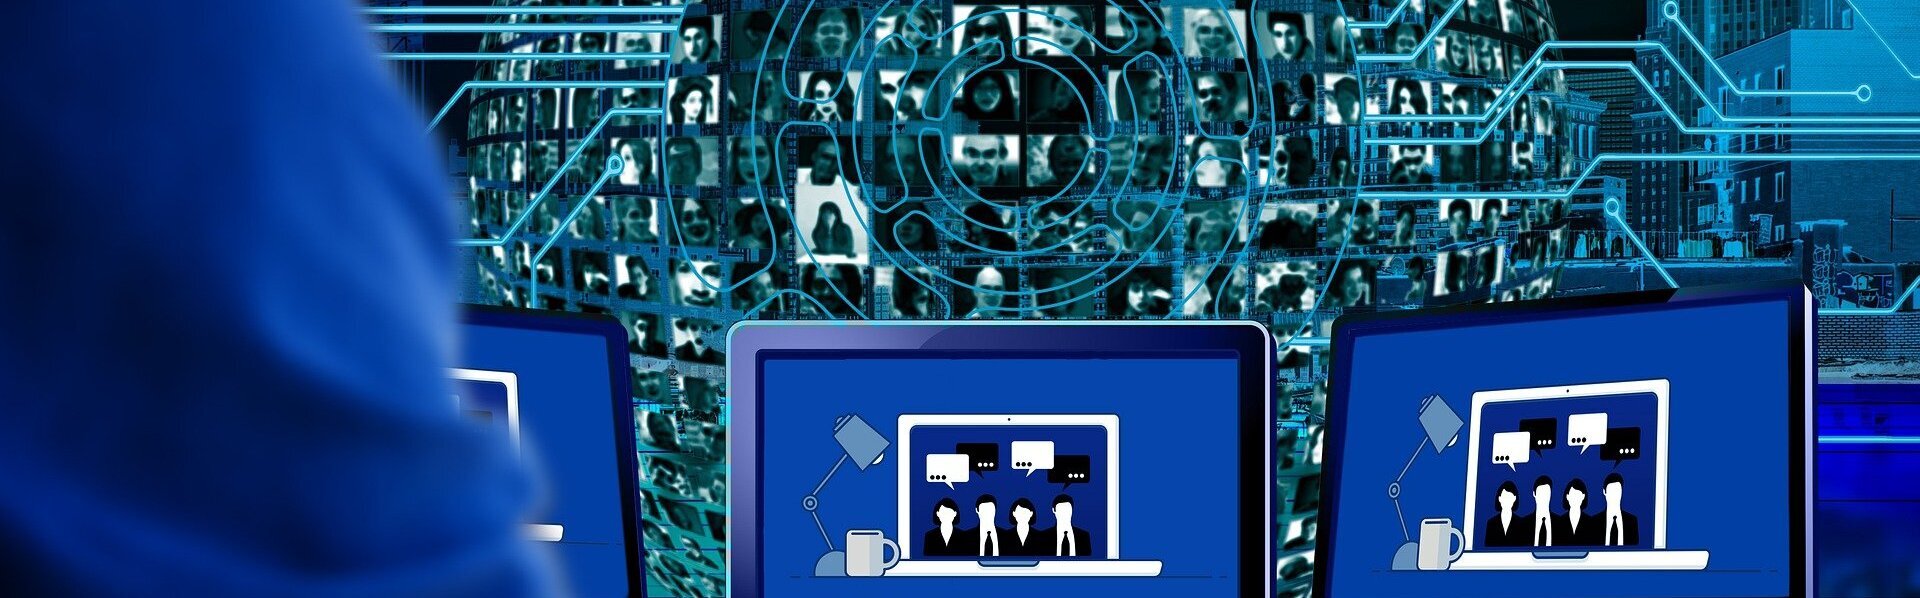 Das Bild zeigt eine Person vor mehreren Bildschirmen, die an einer Videokonferenz teilnimmt. Im Hintergrund sieht man eine Weltkugel mit Bildern verschiedener Personen.